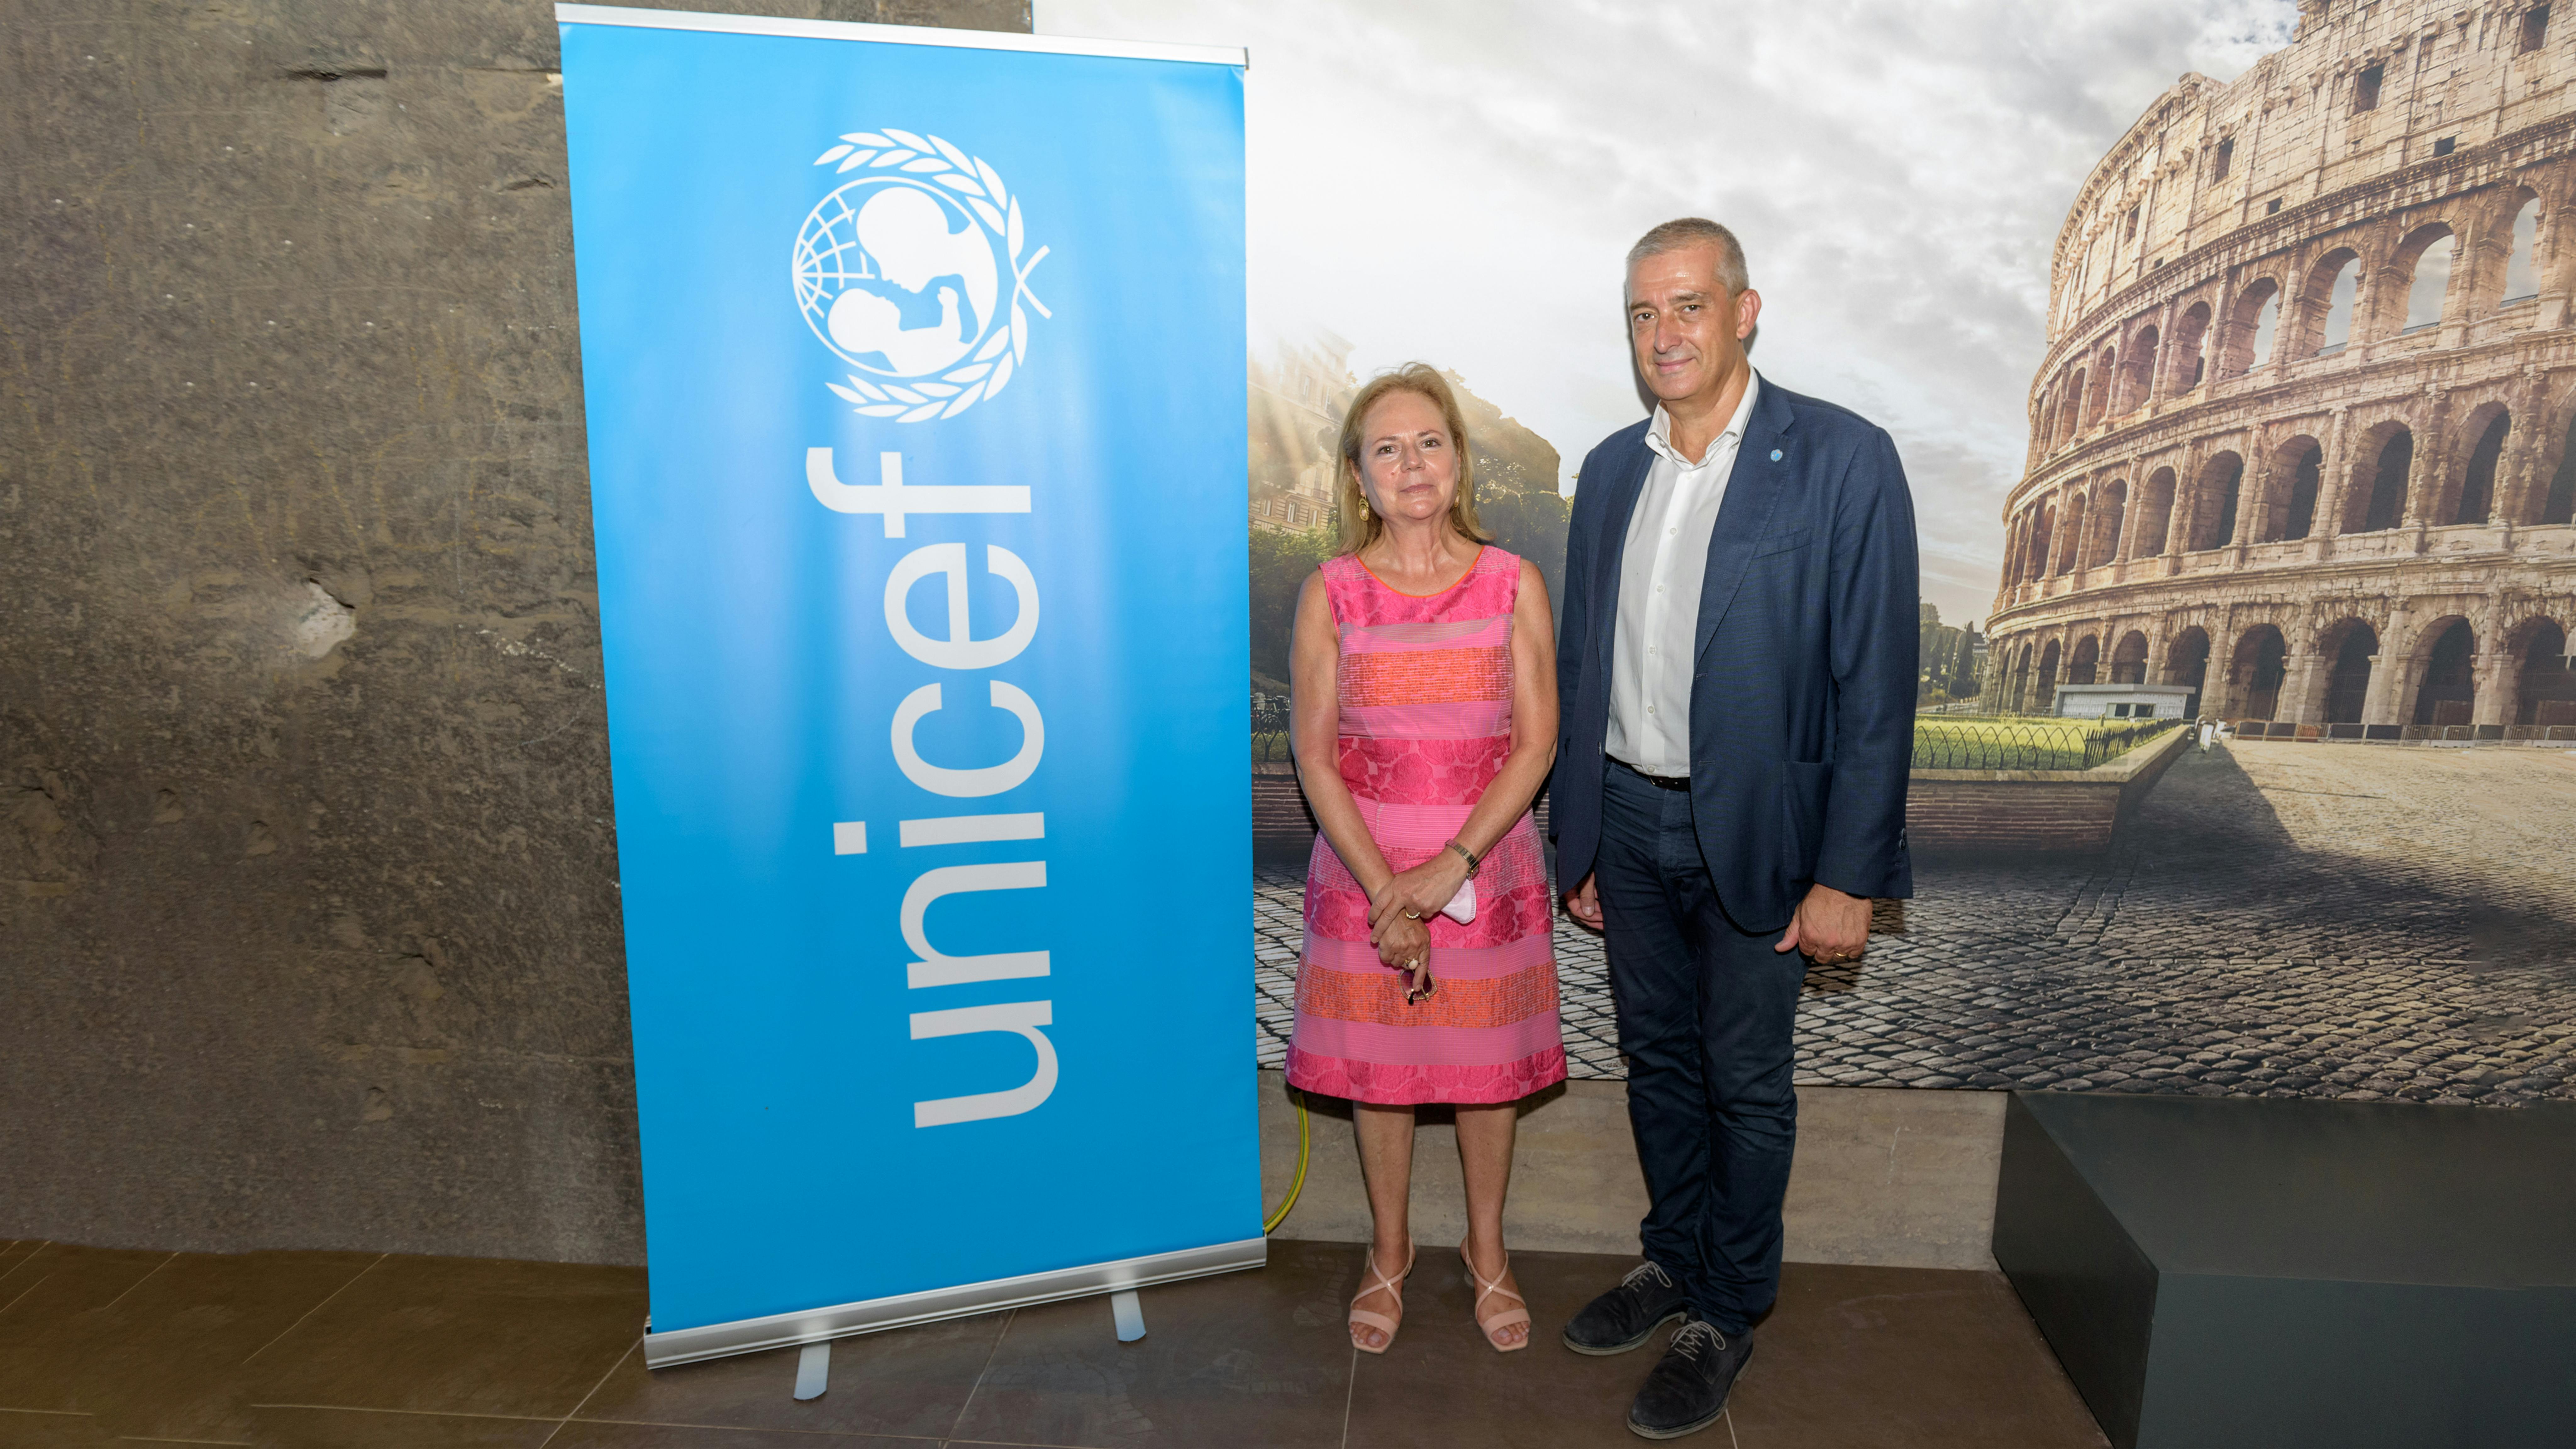 il Direttore Generale dell'UNICEF Italia e Paolo Rozera, il Direttore Generale del Parco archeologico del Colosseo, Alfonsina Russo © Pino pacifico